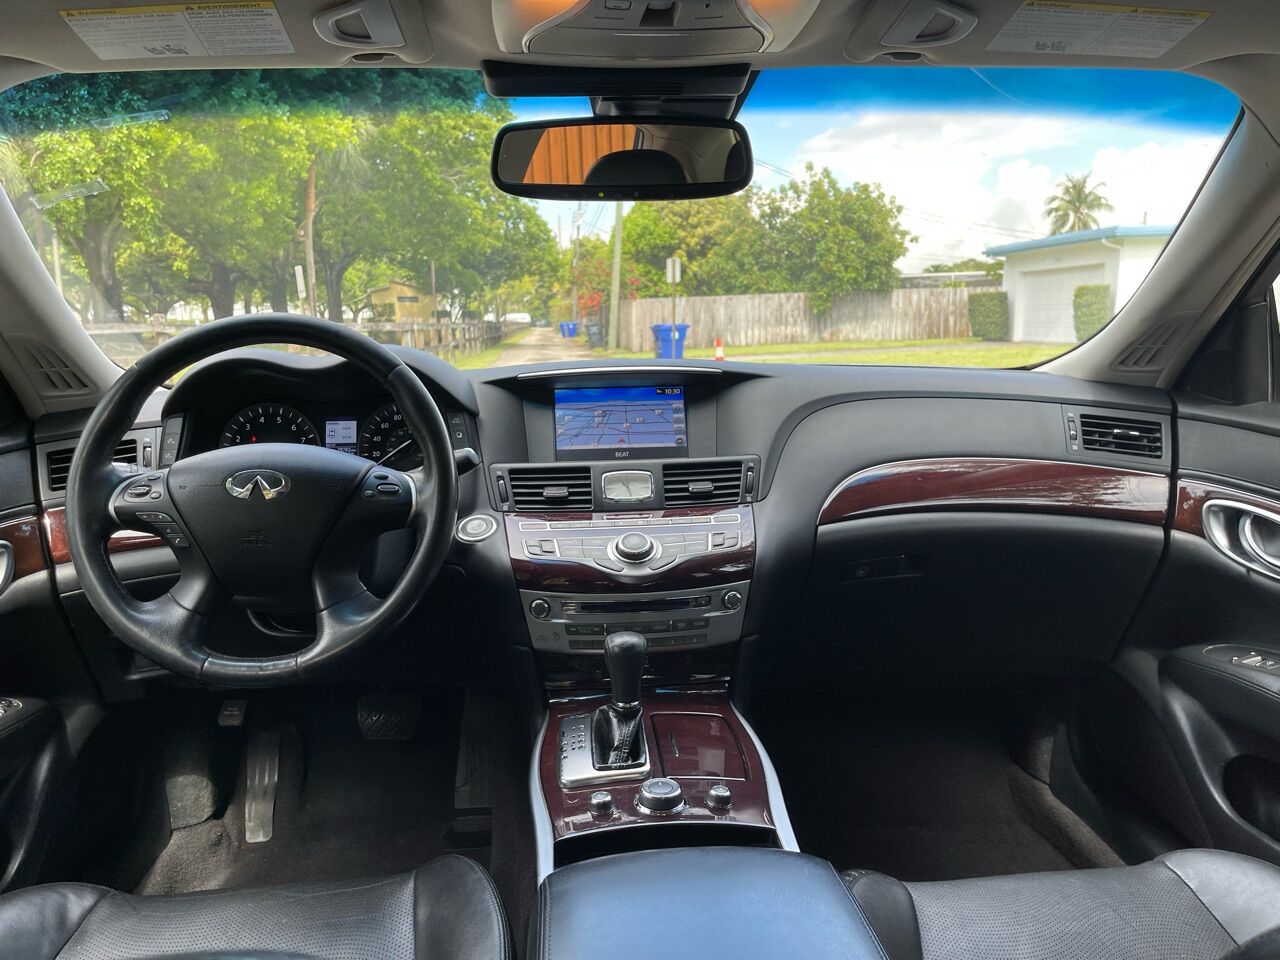 2018 INFINITI Q70 Sedan - $14,900